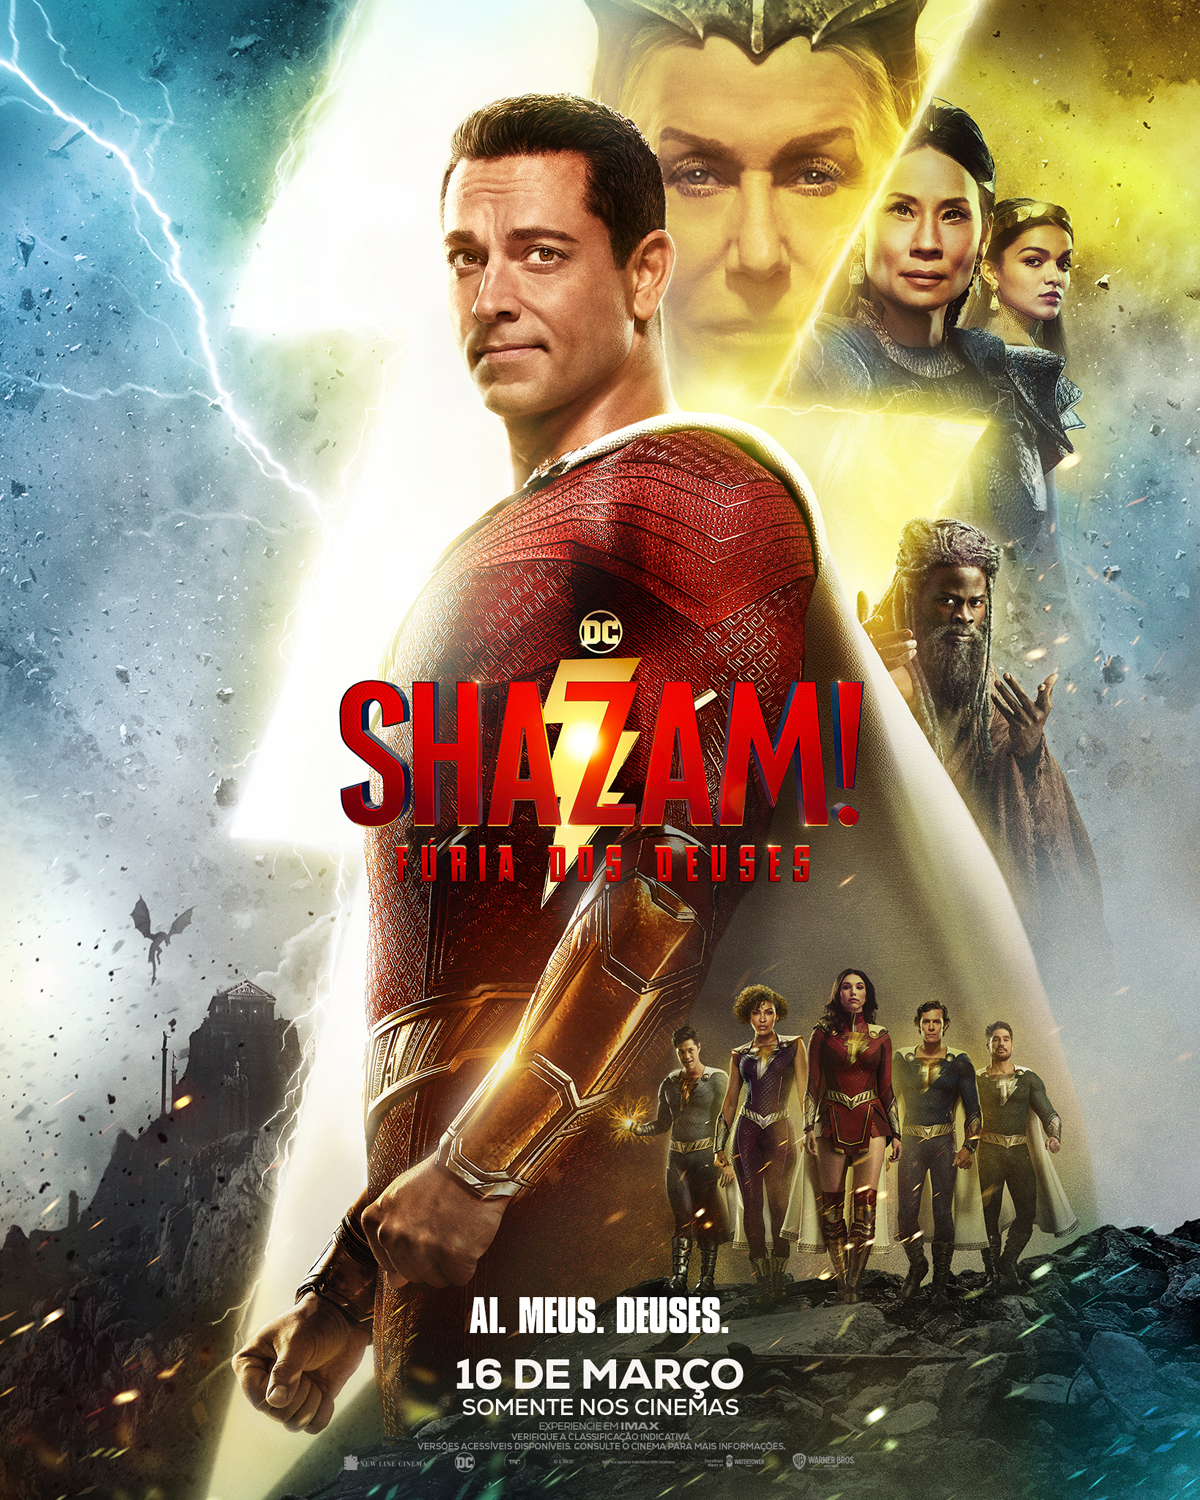 Warner Bros. Pictures divulga novo trailer e pôster de “Shazam! Fúria dos  Deuses” | AToupeira